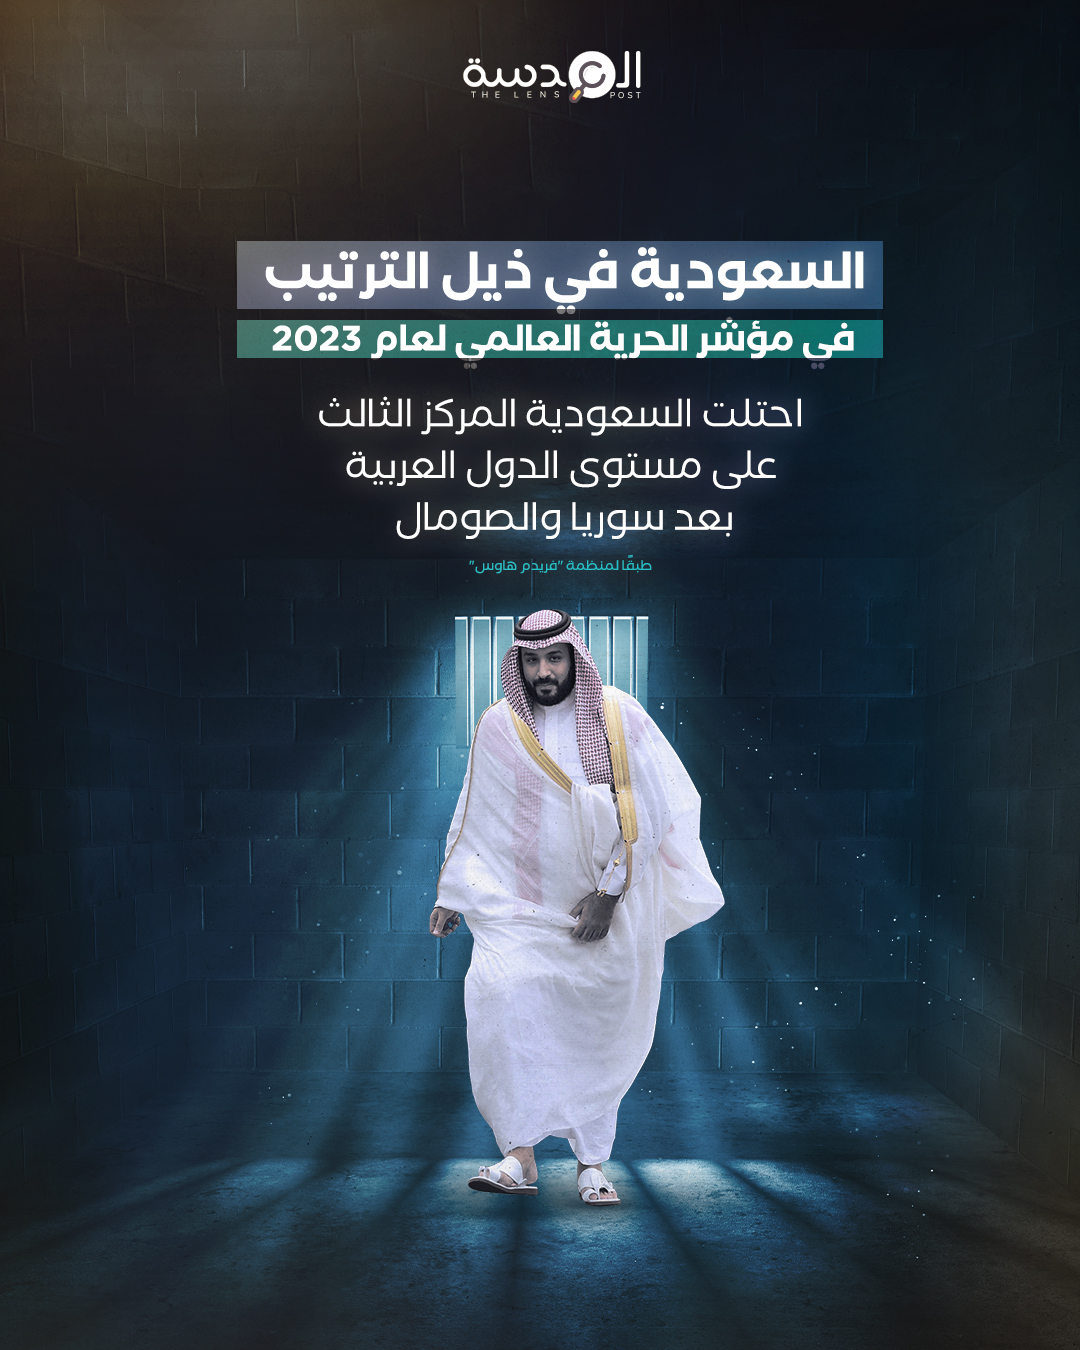 السعودية في ذيل الترتيب في مؤشر الحرية العالمي لعام 2023